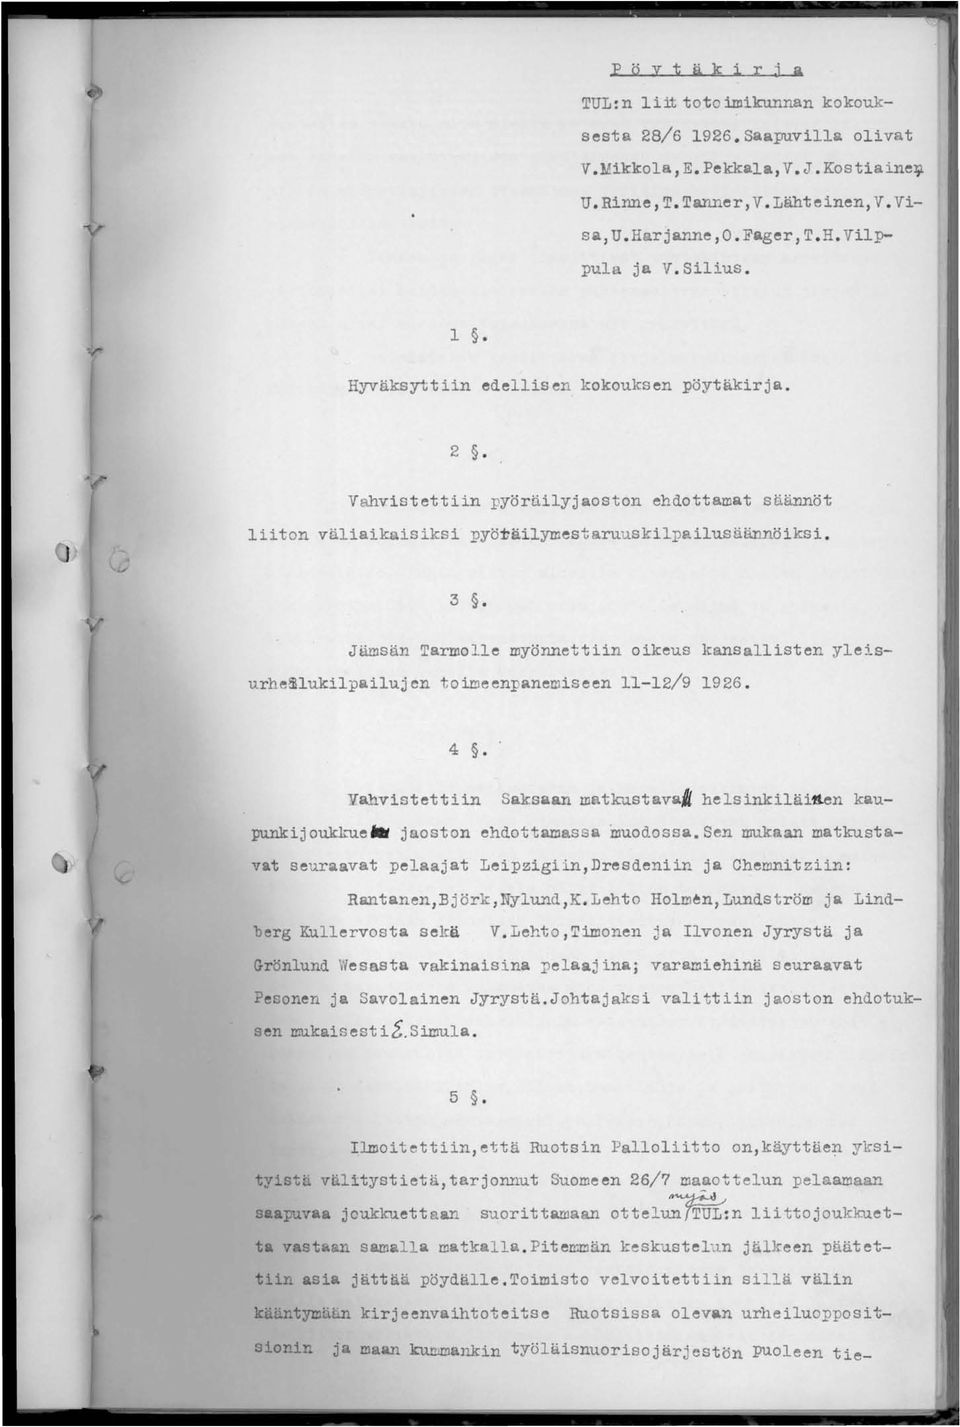 Jämsän Tarmolle myönnettiin oikeus kansallisten yleisurhe~lukilpailujen toi~eenpanemiseen 11-12/9 1926. 4.